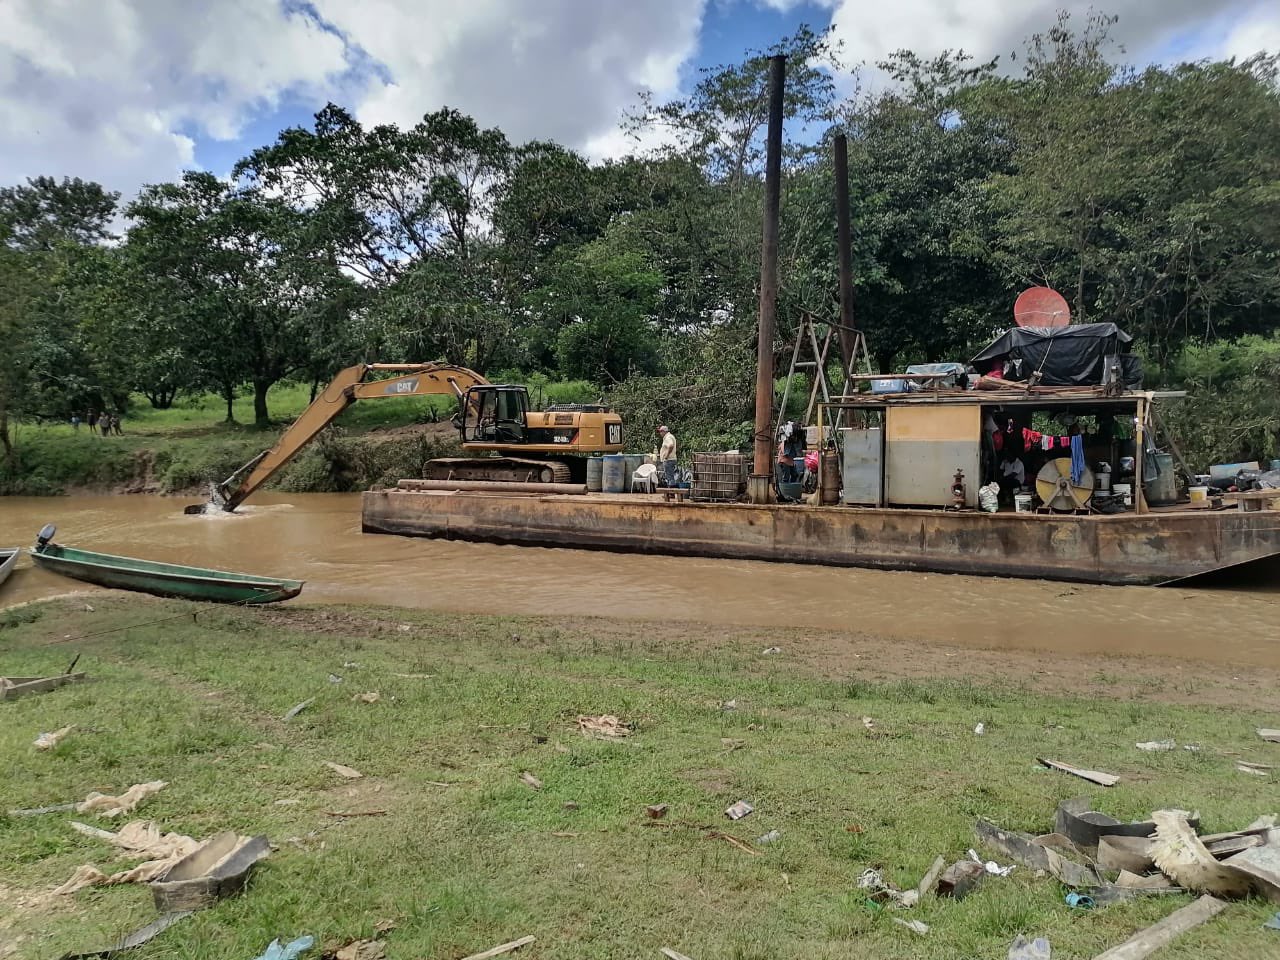 FFAA aseguran equipo de extracción de minería en Río Patuca